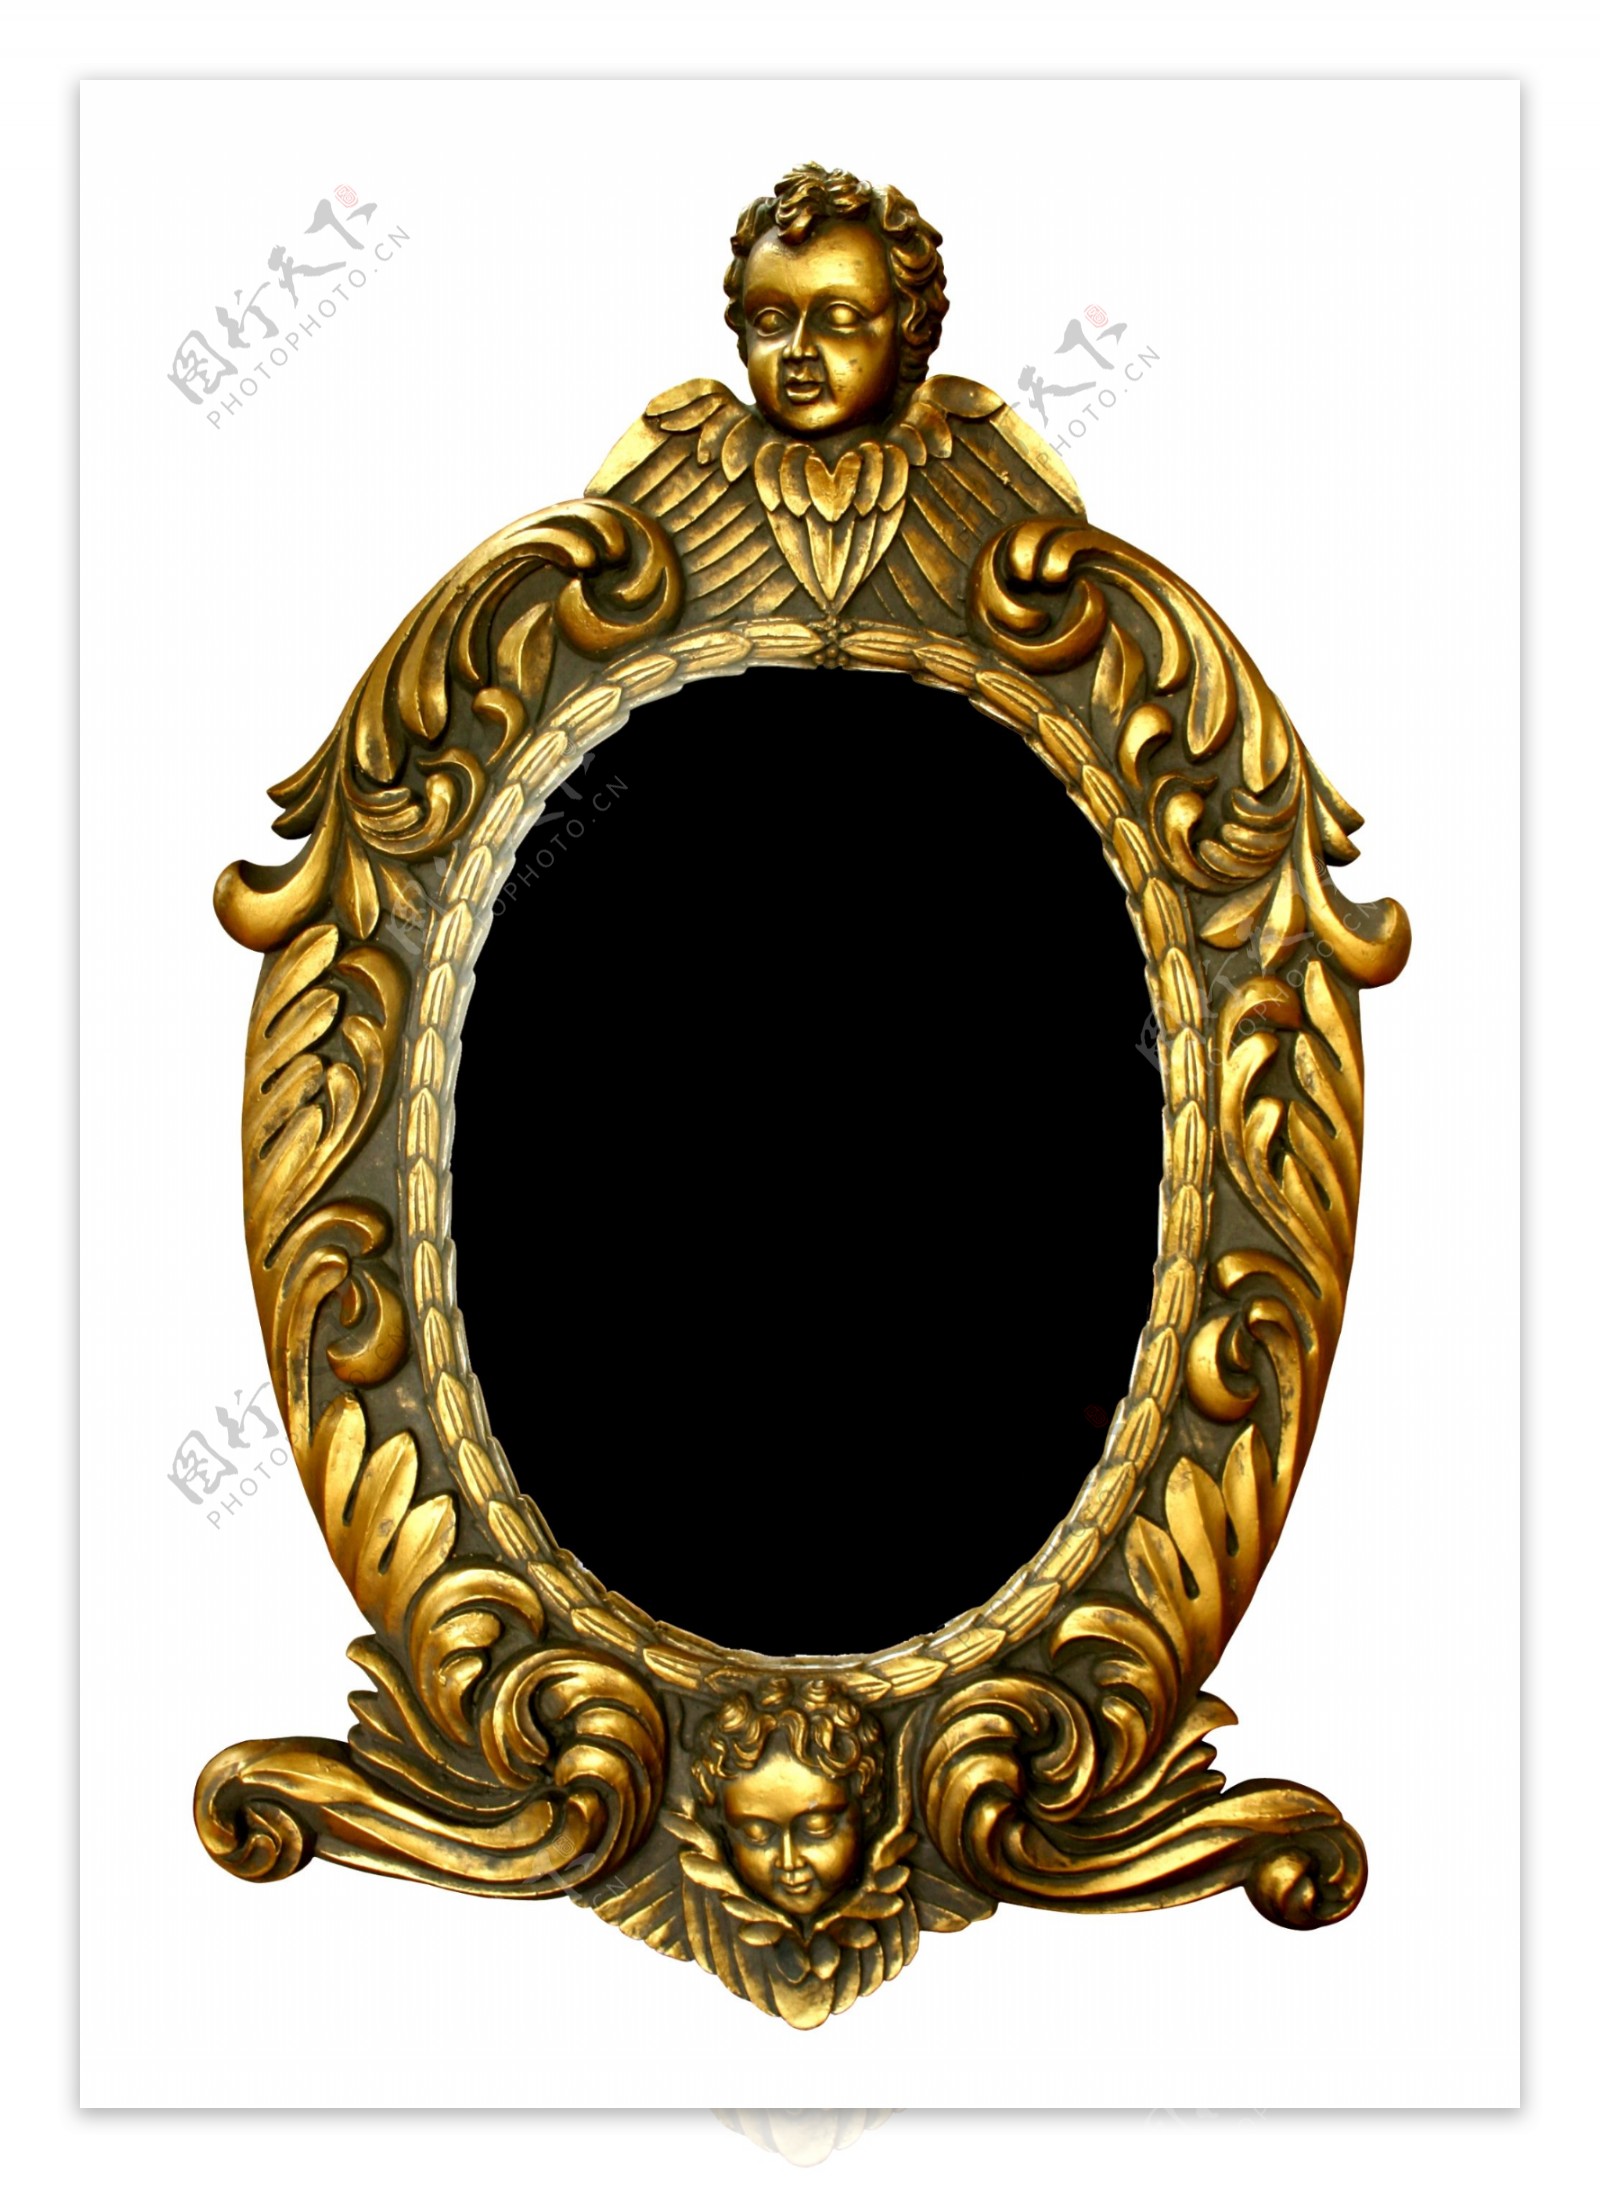 金色浮雕欧式古花纹镜框